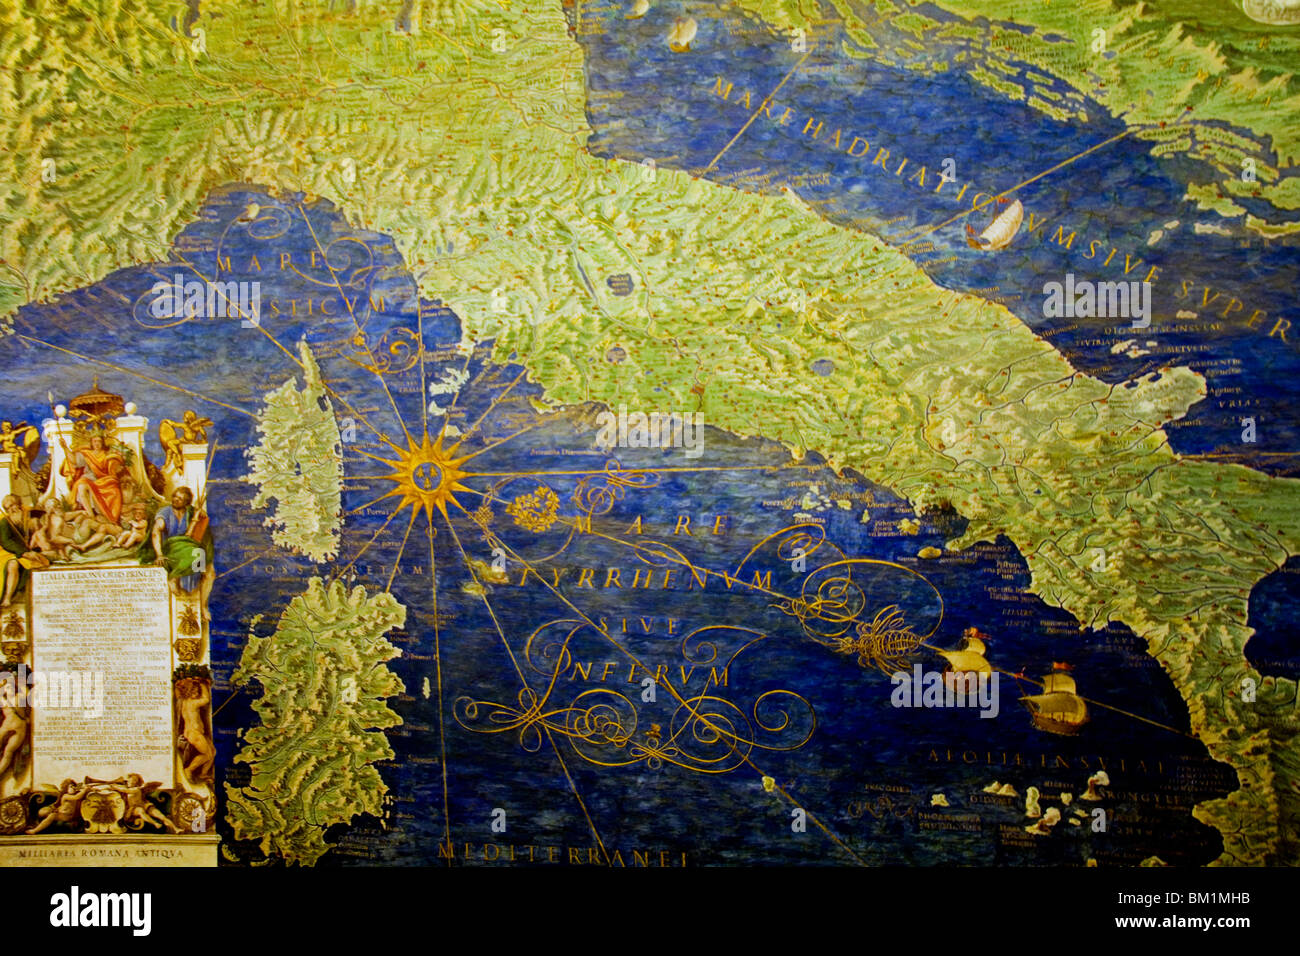 Por Ignazio Danti 1536-1586 Roma Italia Europa la historia de la UE cartografía histórica arte cultura artística turística turismo cultural Foto de stock